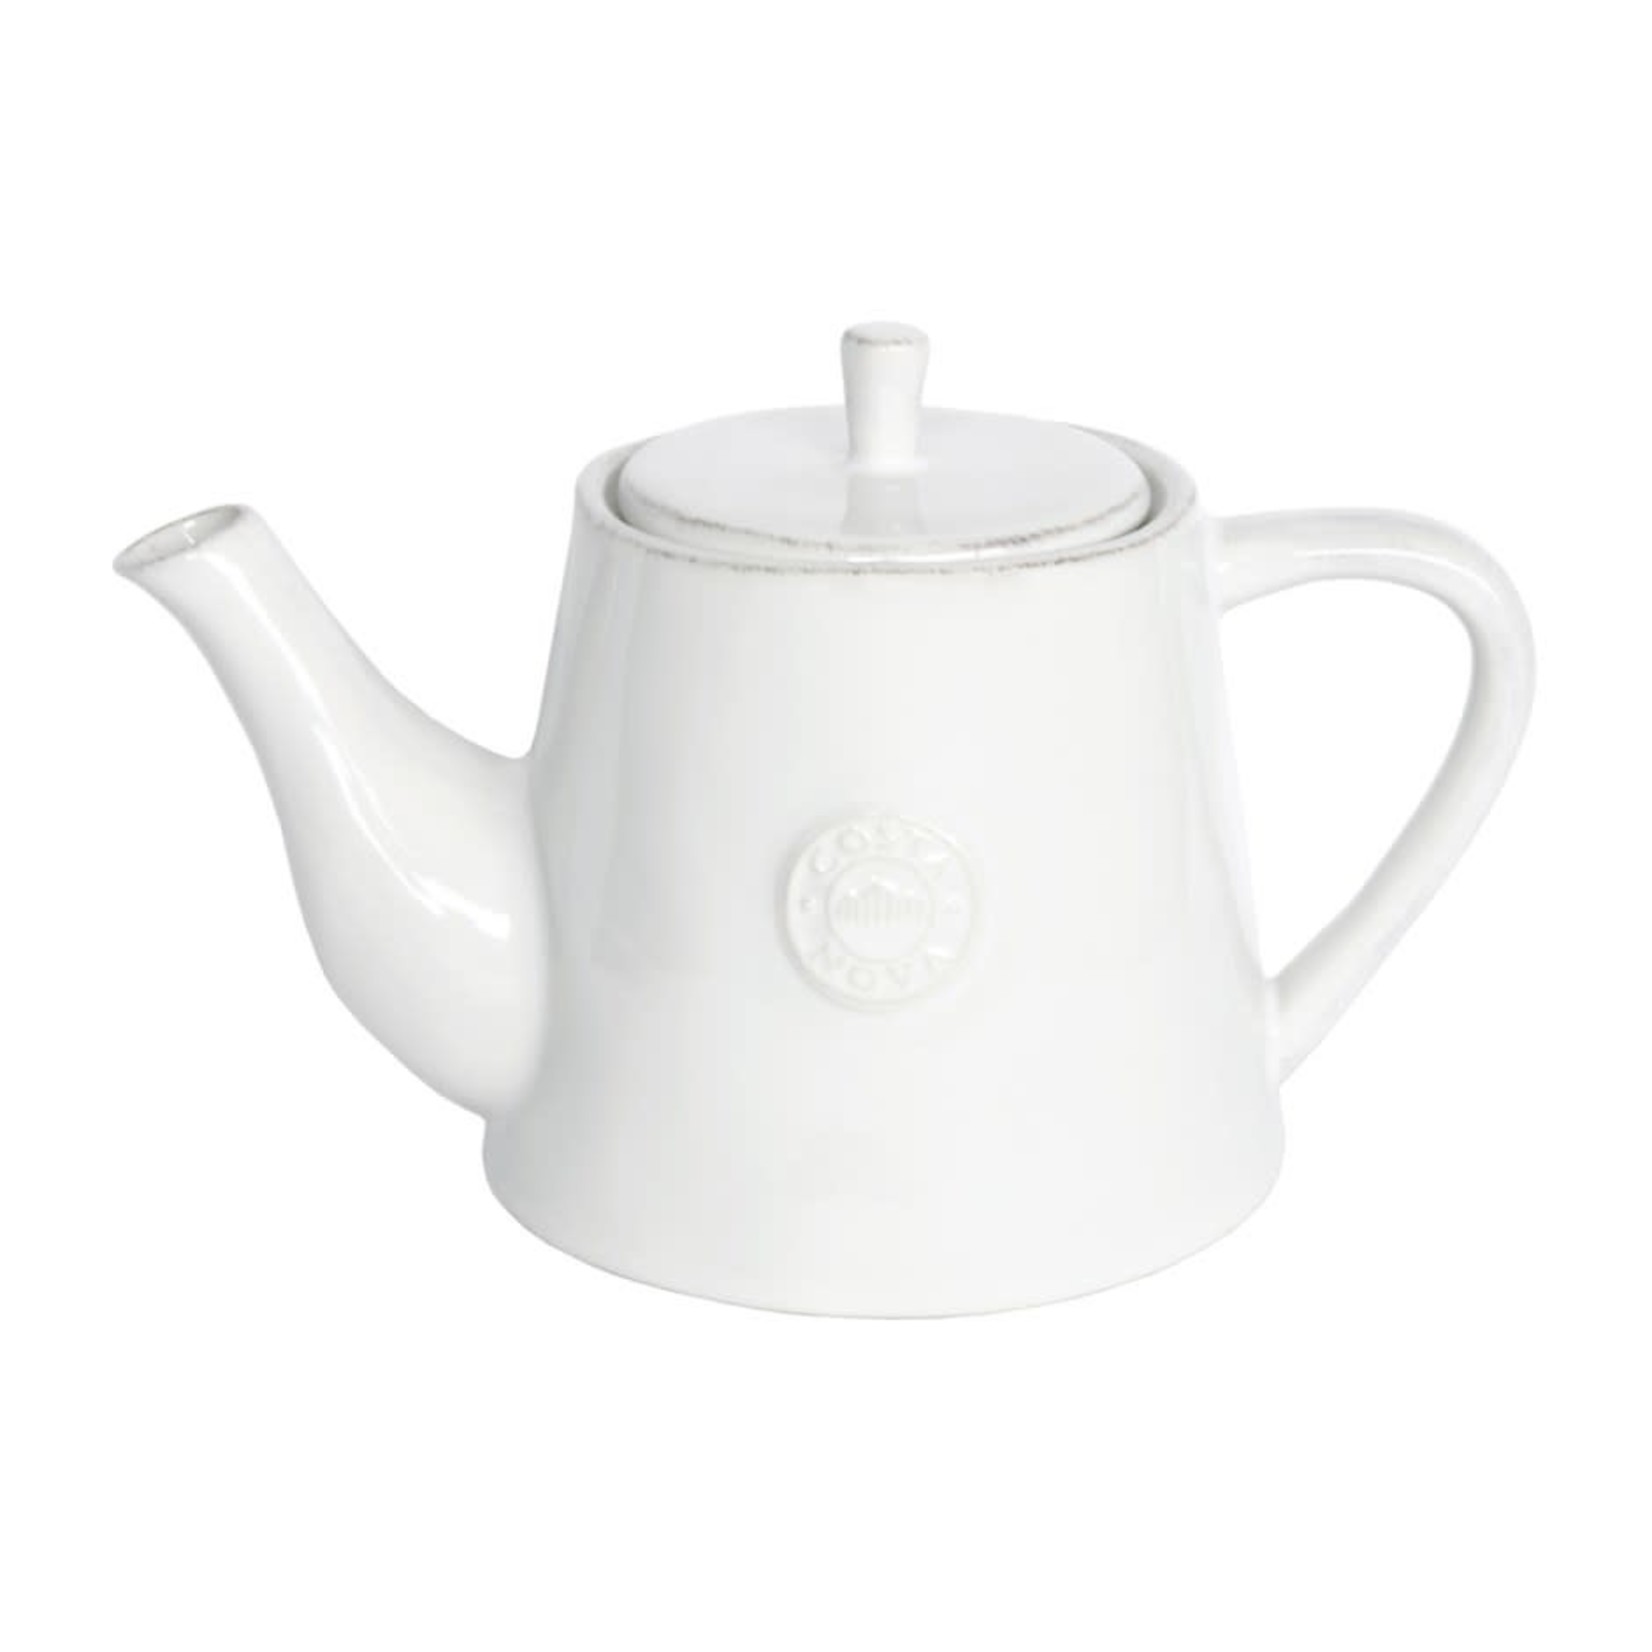 CASAFINA COSTA NOVA Nova Teapot 1.08L - White